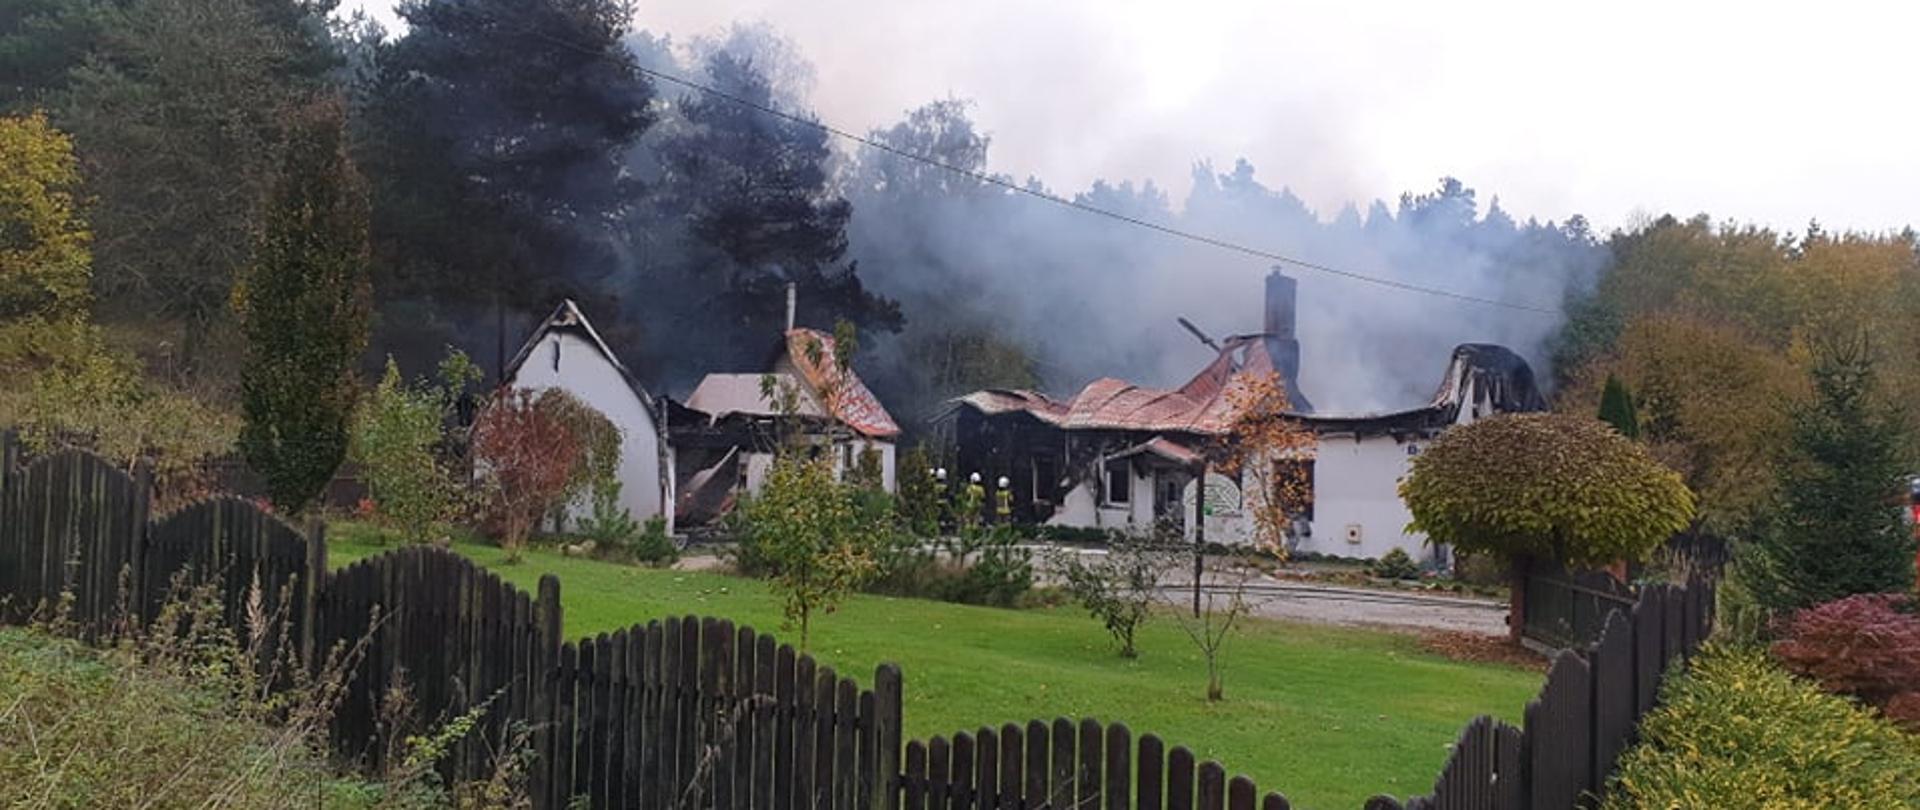 Zdjęcie przedstawia zniszczone dwa budynki po pożarze, po prawej stronie budynek mieszkalny jednorodzinny, po lewej stronie budynek garażowo-gospodarczy. Zapadnięte dachy, okopcone ściany, unoszący się dym. Posiadłość ogrodzona drewnianym płotem. W tle las.